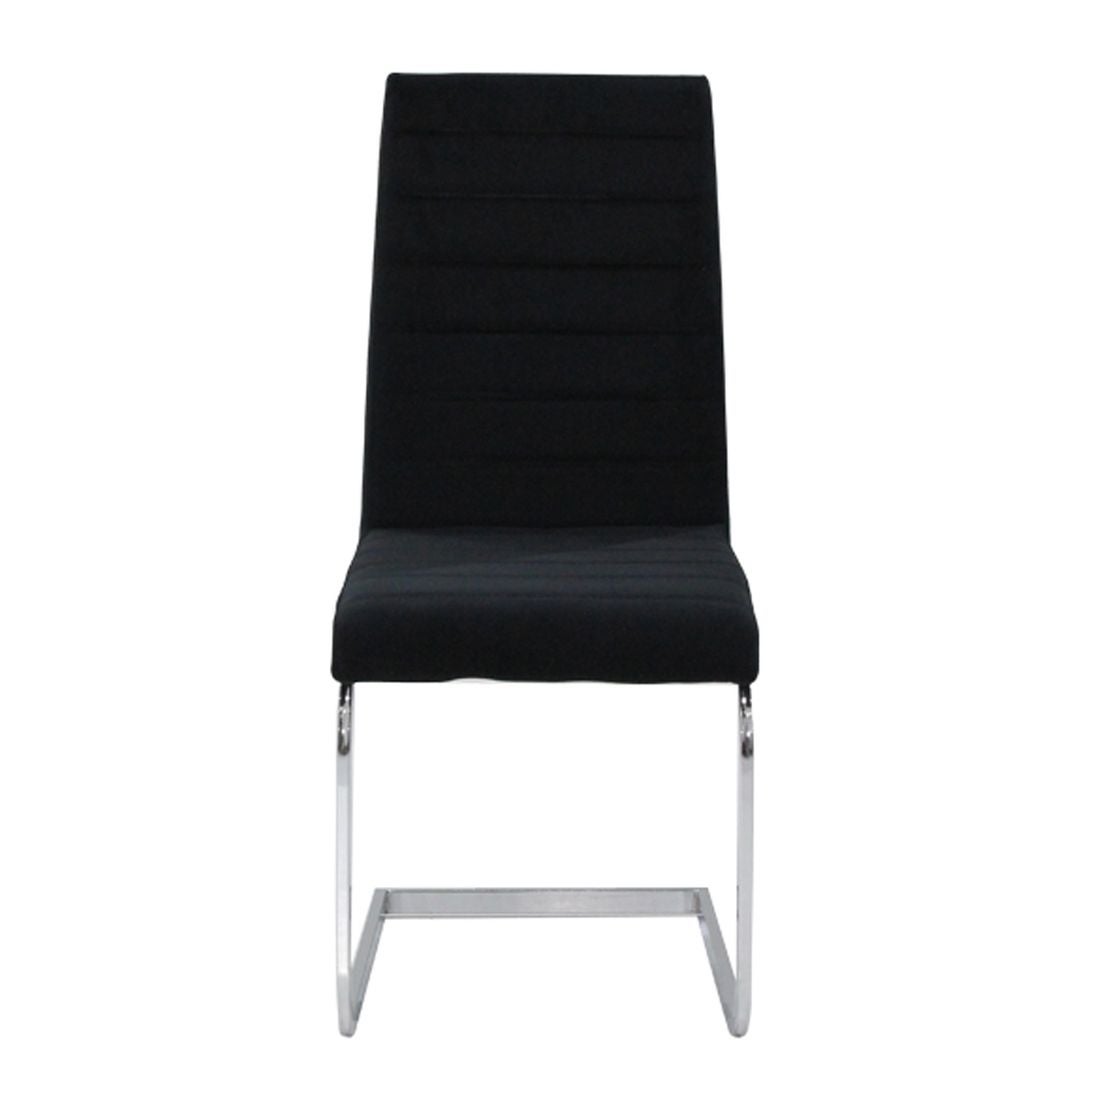 เก้าอี้ทานอาหาร เก้าอี้เหล็กเบาะผ้า รุ่น Lushi-SB Design Square